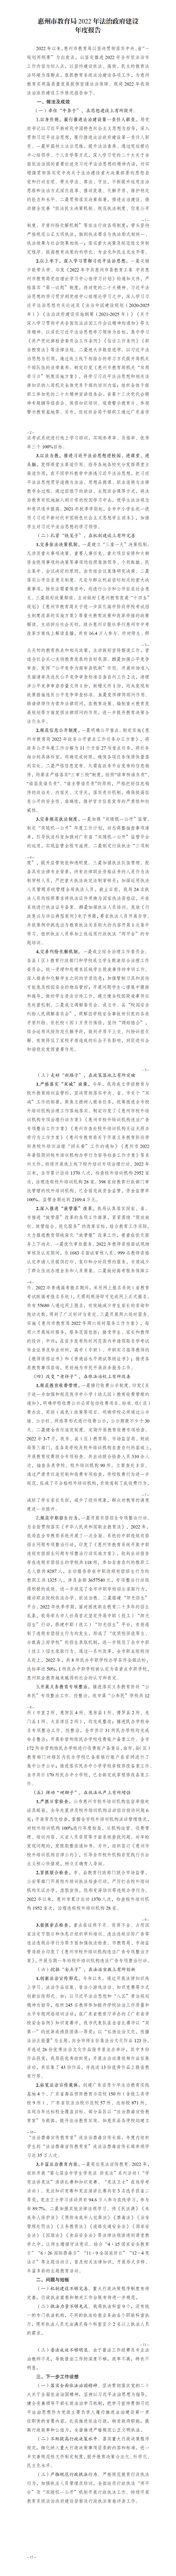 惠州市教育局2022年法治政府建设年度报告（定）(1).png